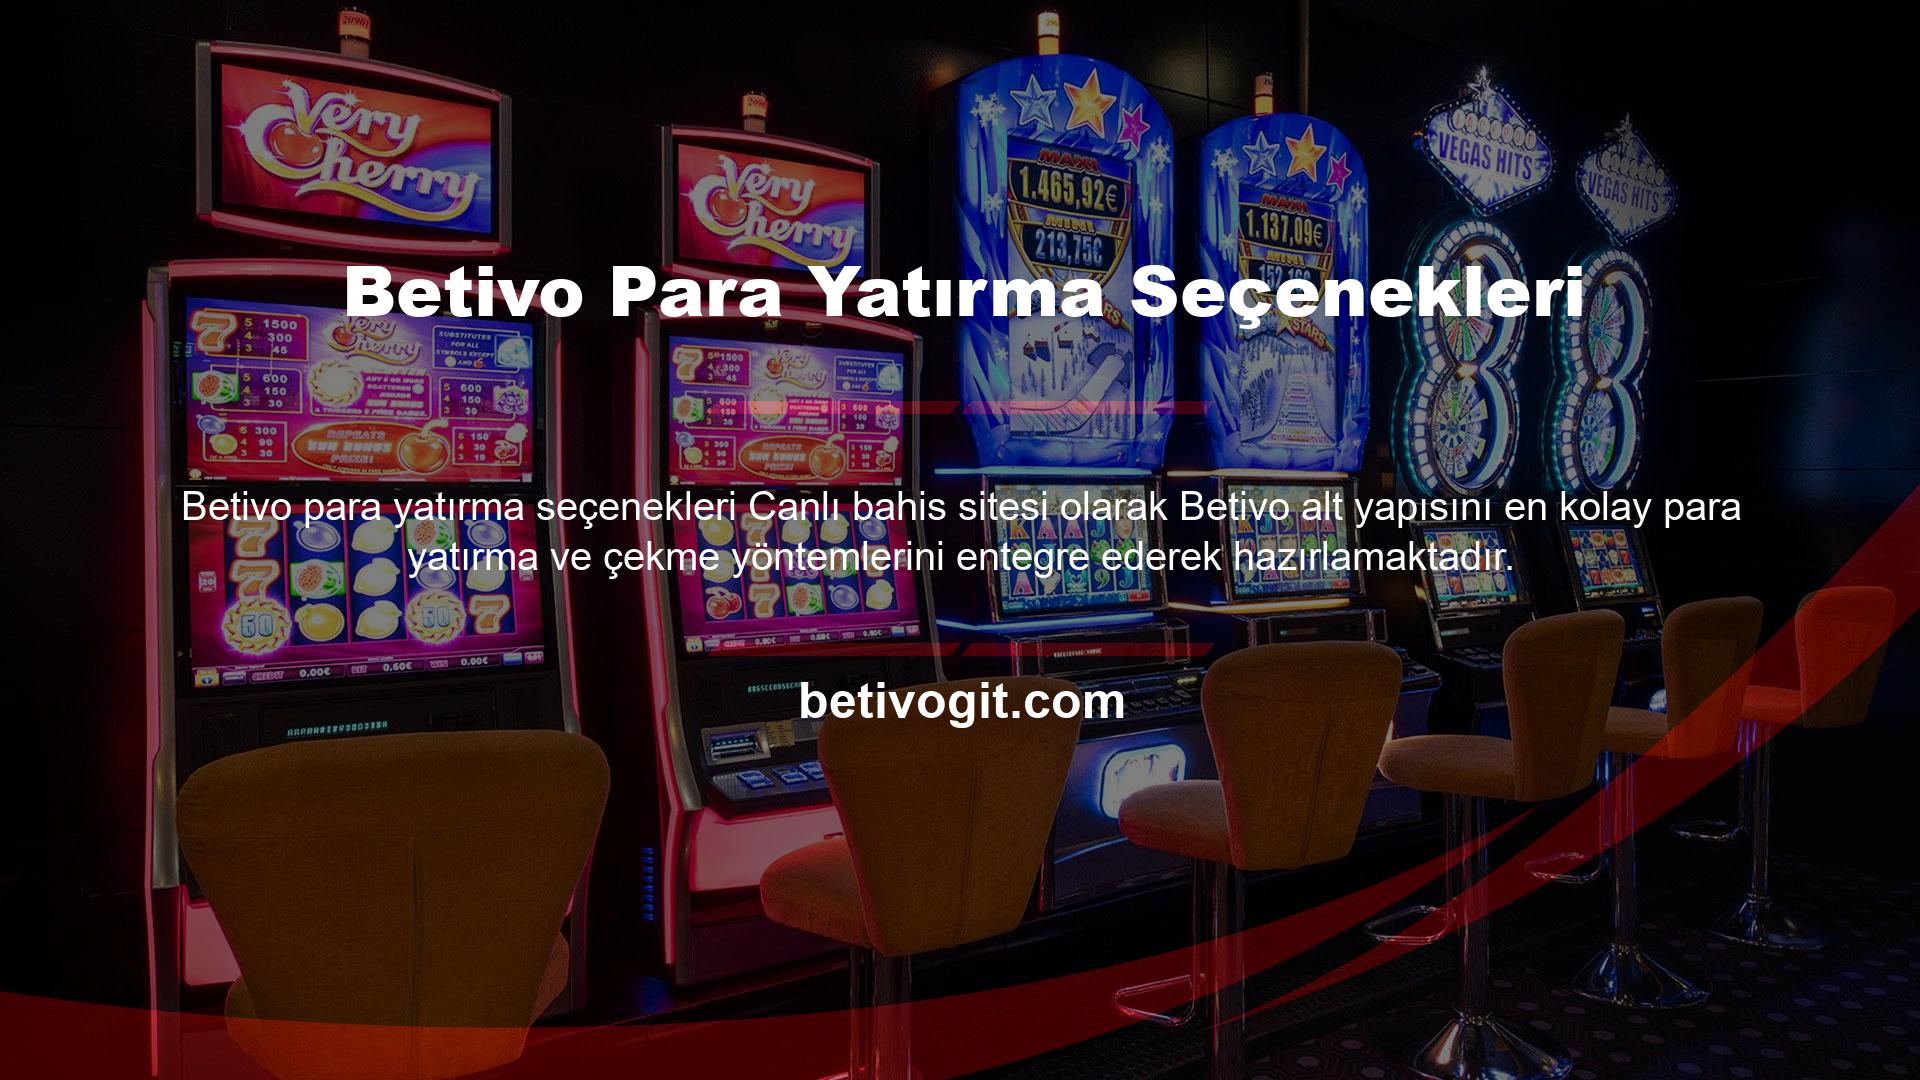 Siz değerli üyemizin yapmanız gereken tek şey oyun için gerekli ücreti (Betivo para yatırma işlemleri için küçük bir alt limit vardır) internet ve bankacılık sistemi aracılığıyla Betivo hesabınıza aktarmanız